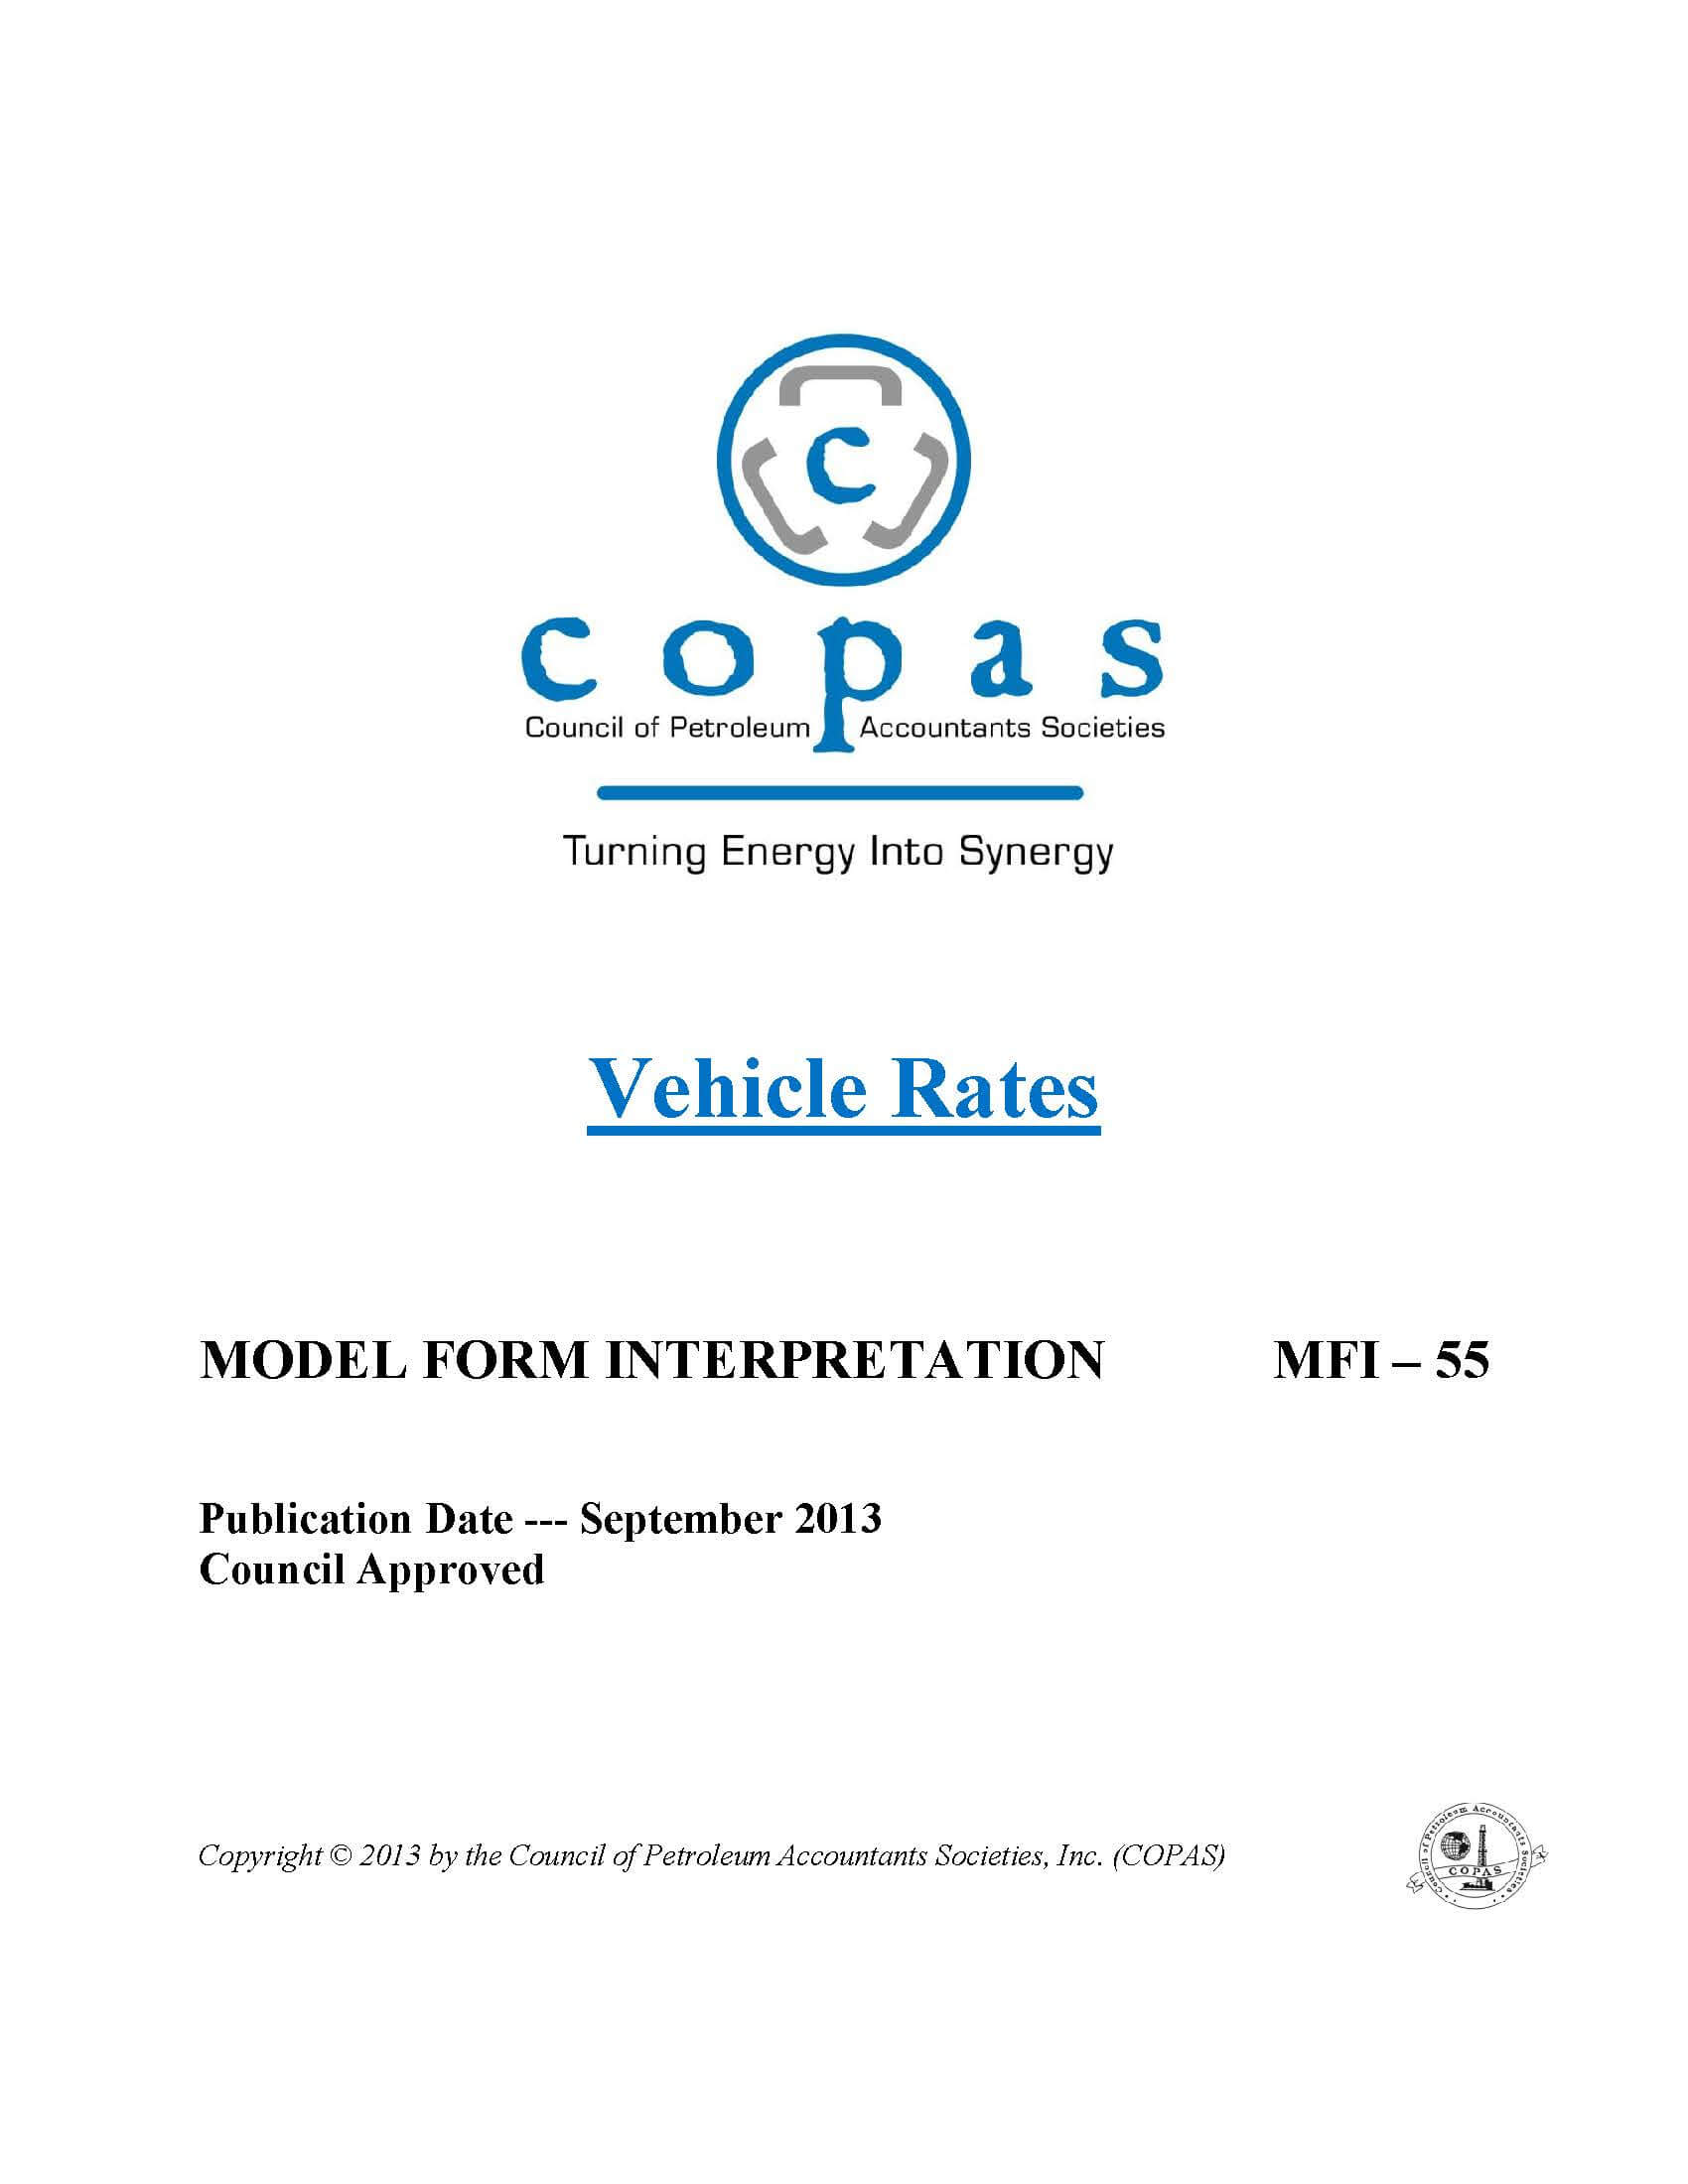 MFI-55 Vehicle Rates